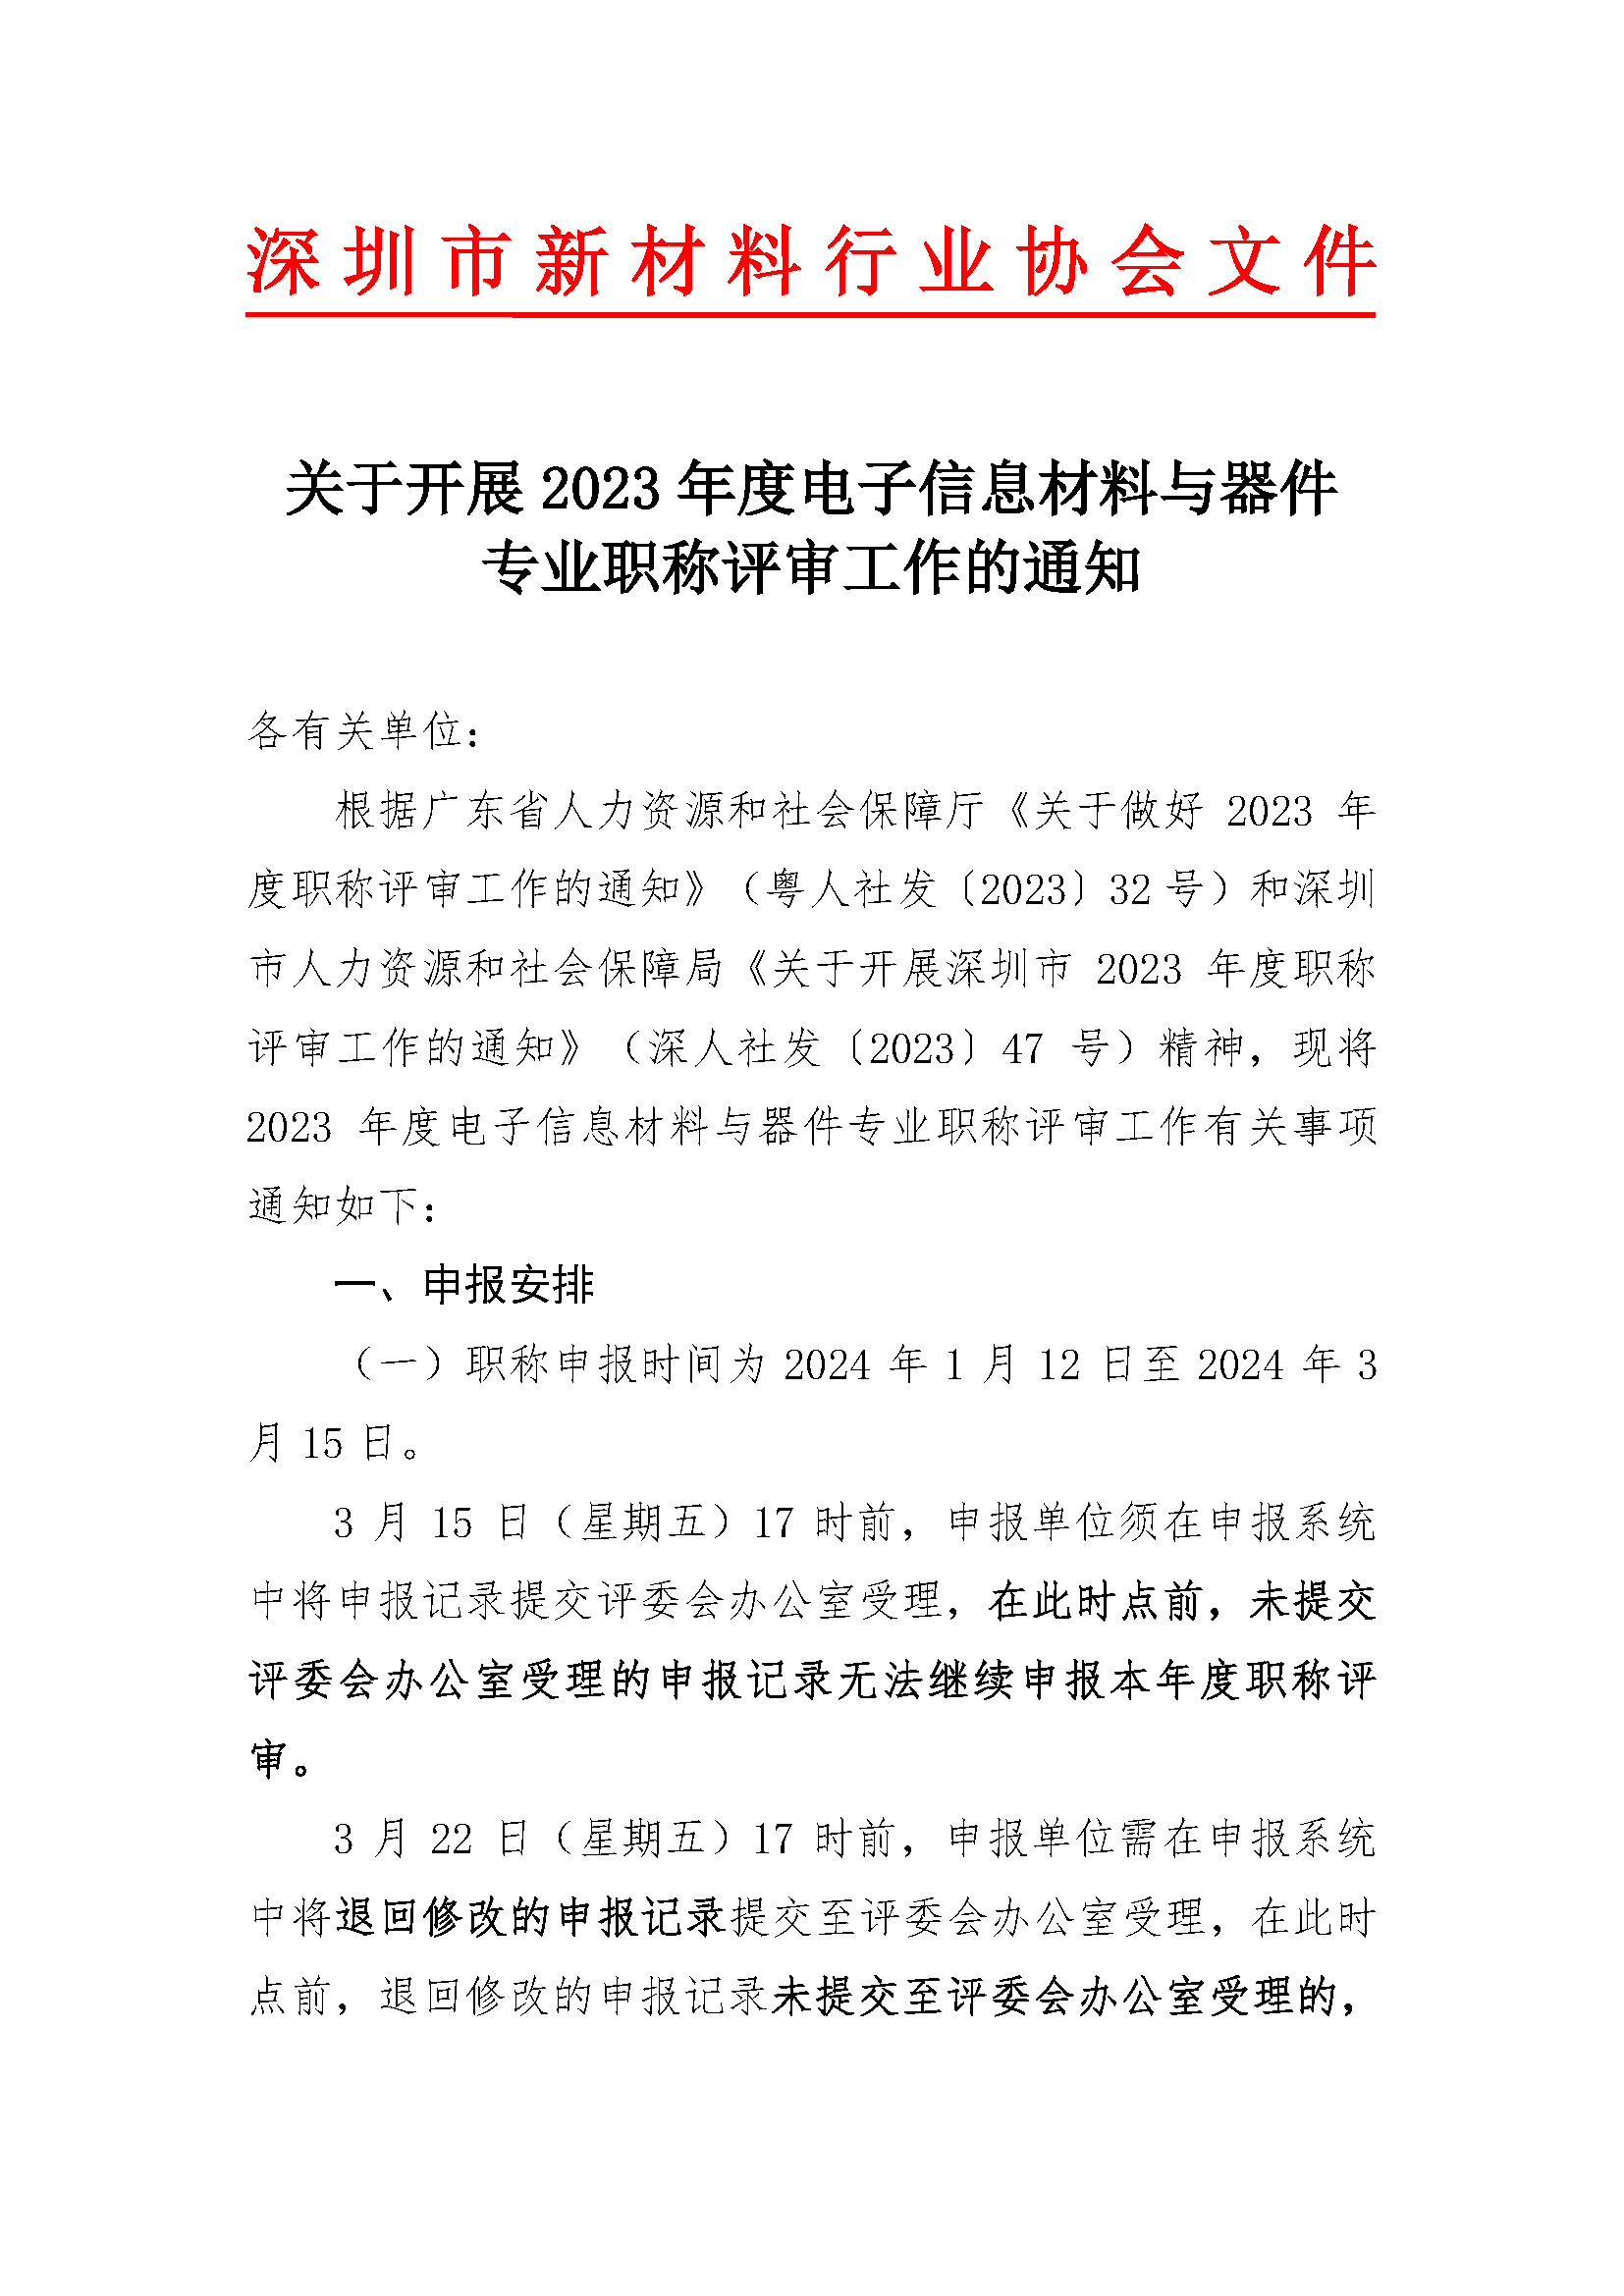 关于开展深圳市2023年度电子信息材料与器件专业职称评审工作的通知_页面_01.jpg